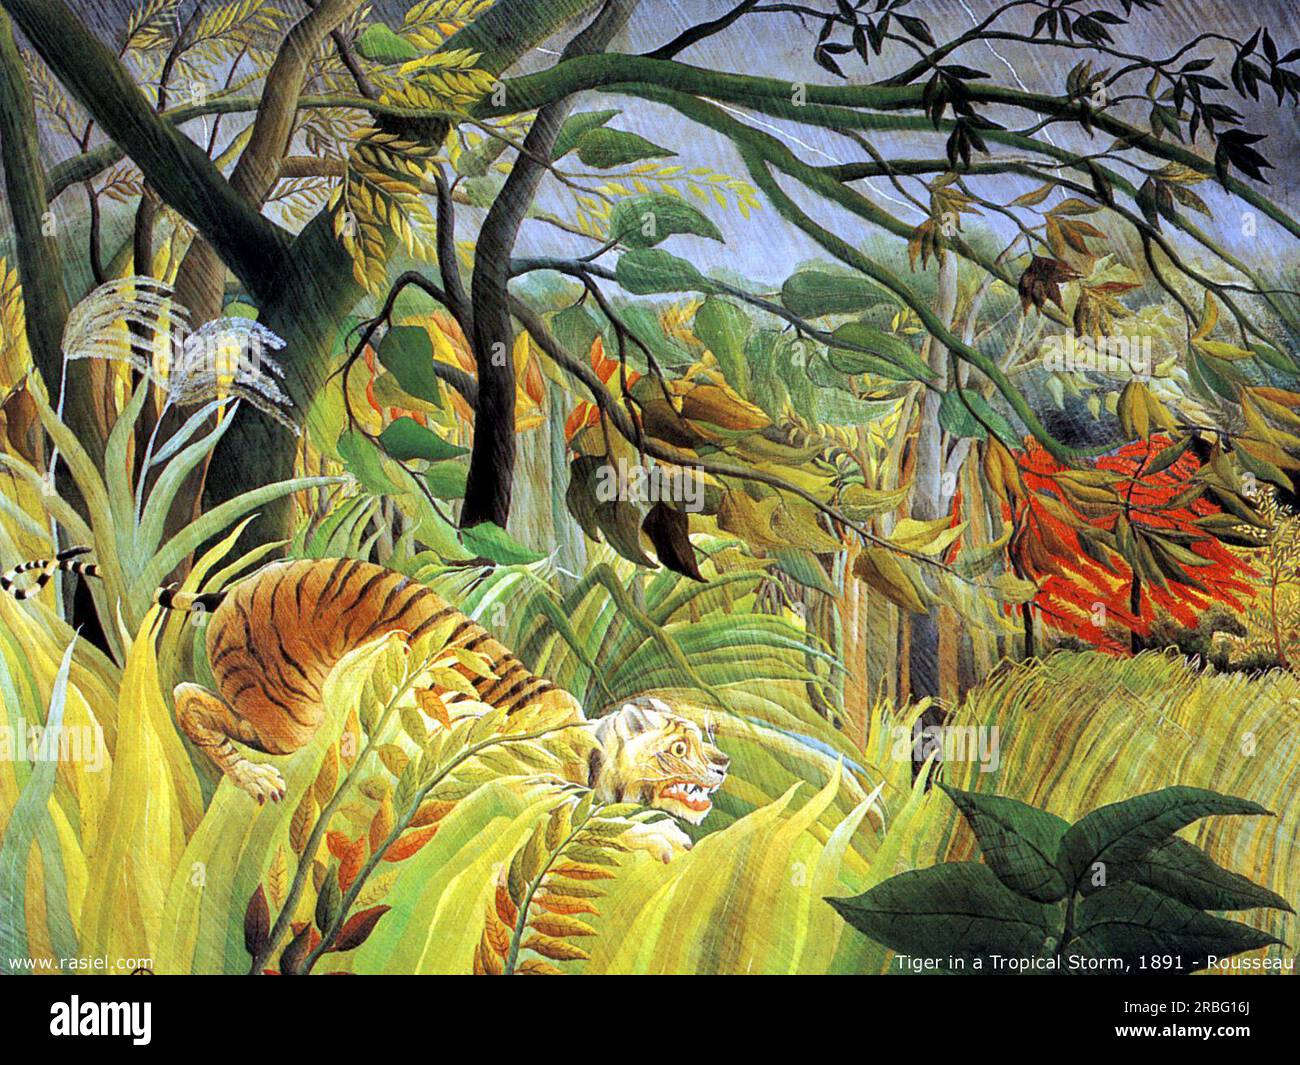 Tigre dans une tempête tropicale (surpris!) 1891 par Henri Rousseau Banque D'Images